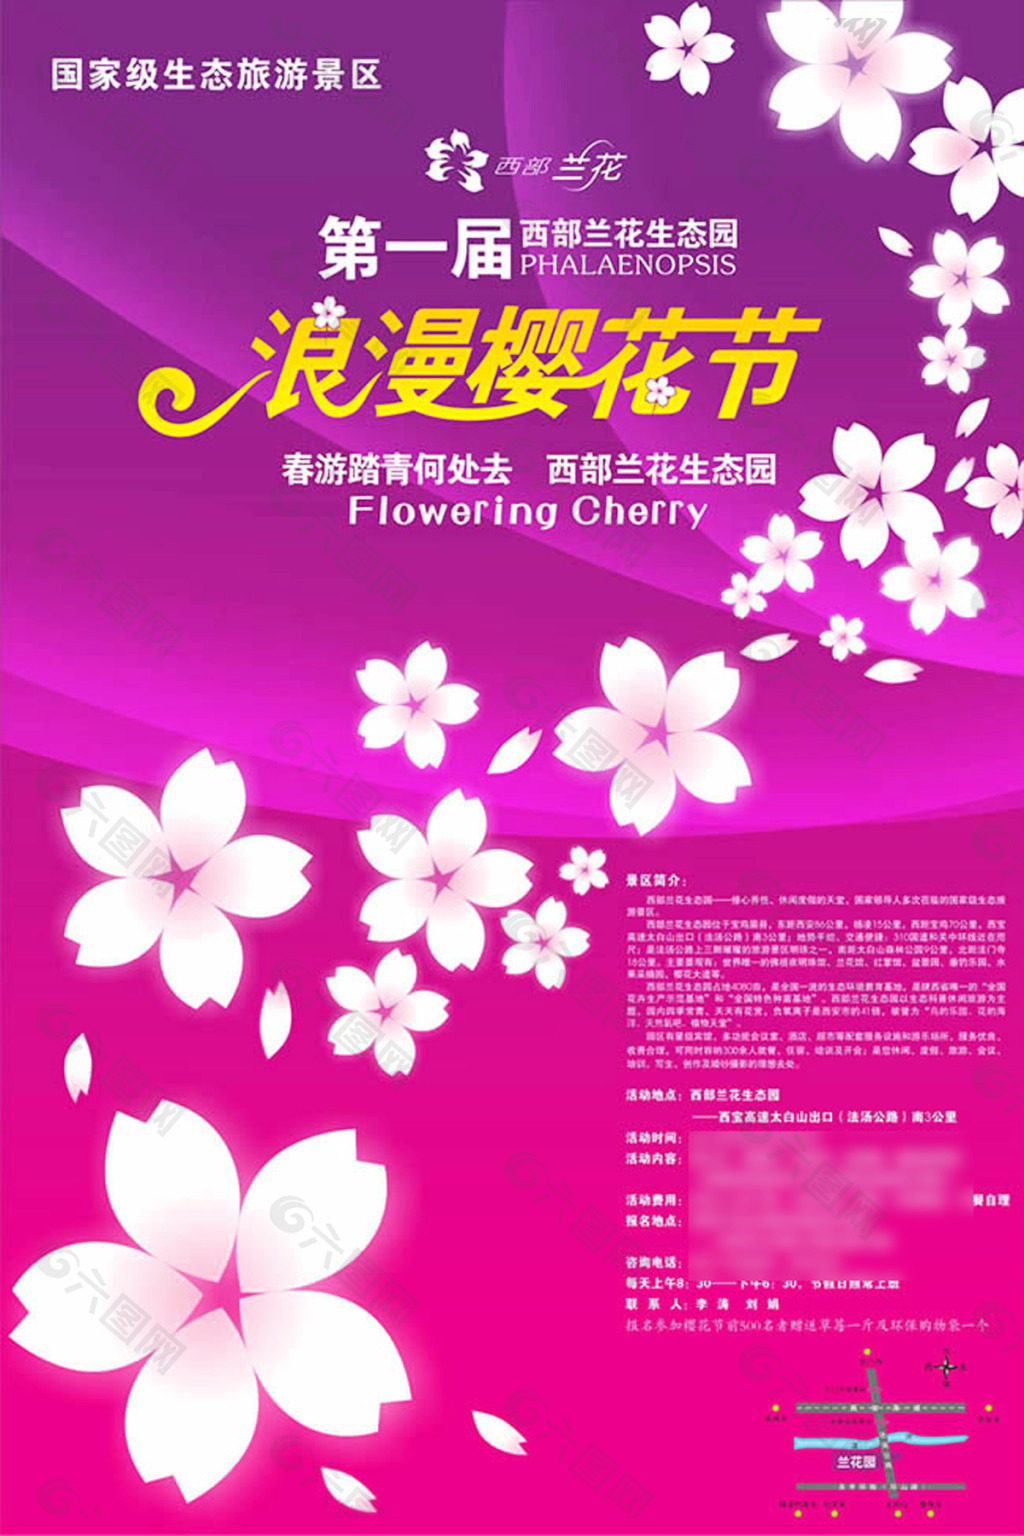 浪漫樱花节海报设计cdr素材